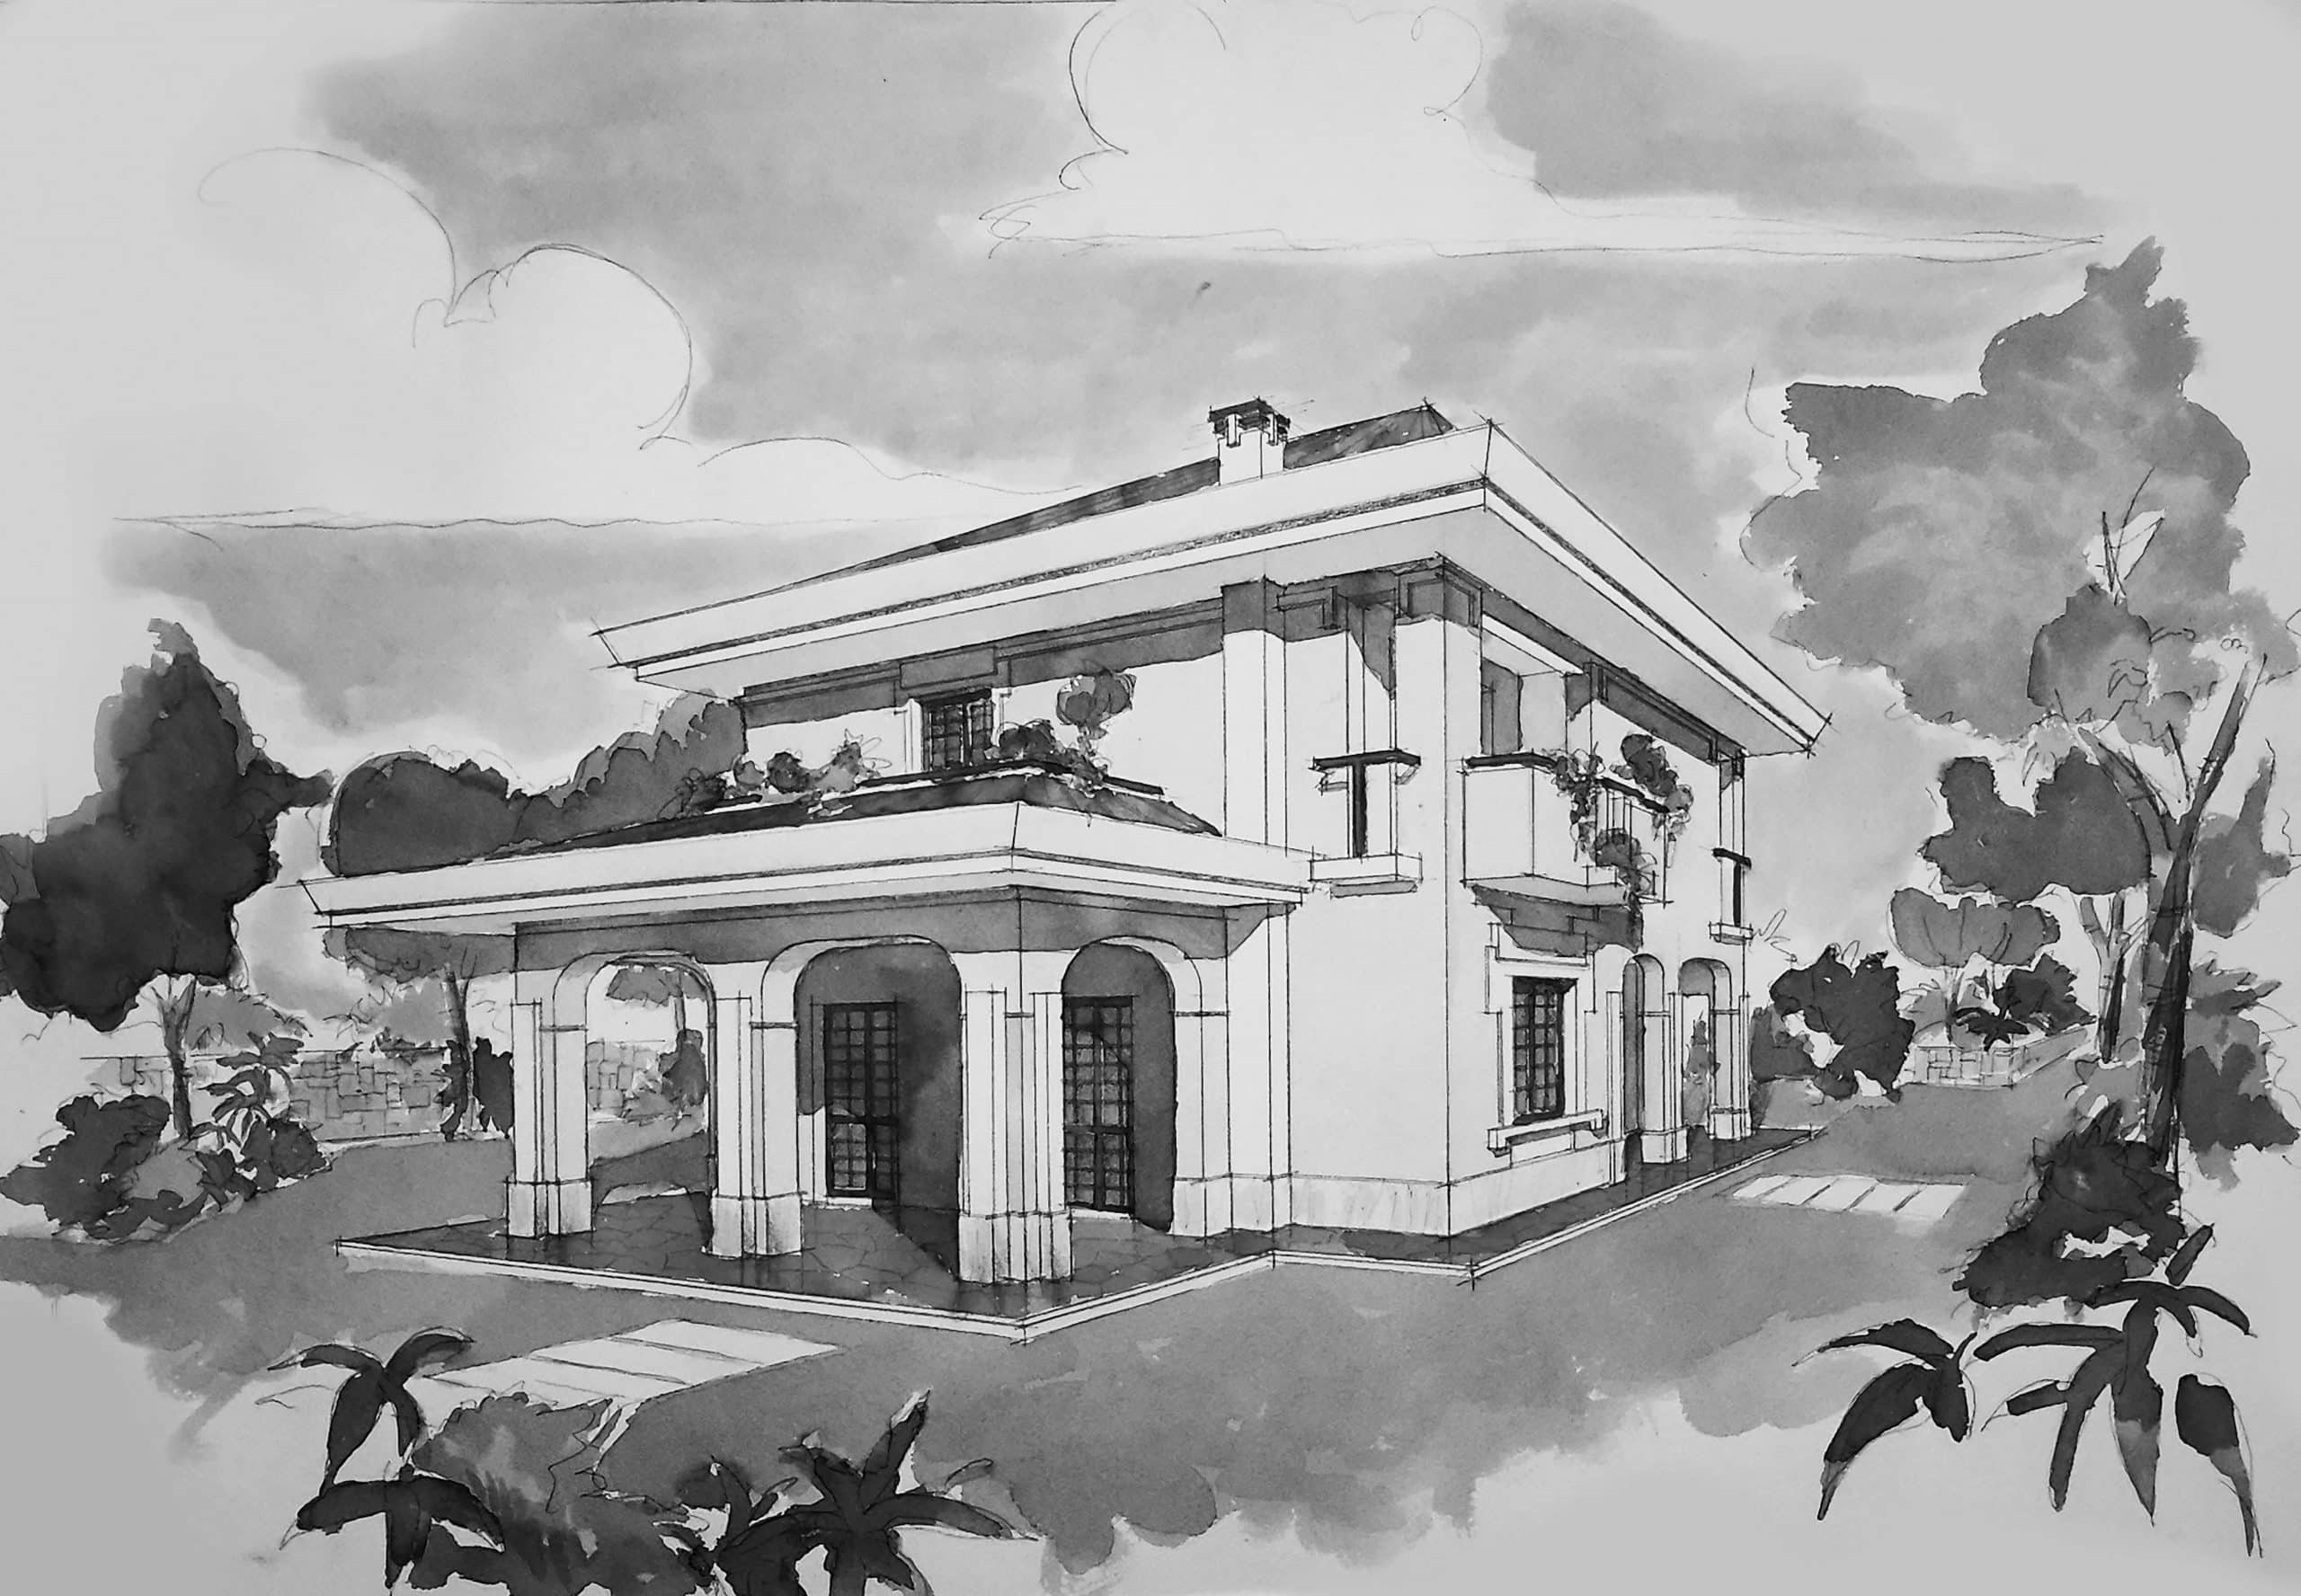 15 - Villa unifamiliare in via Pompeo Magno, Albano Laziale (RM) - Vista prospettica esterna